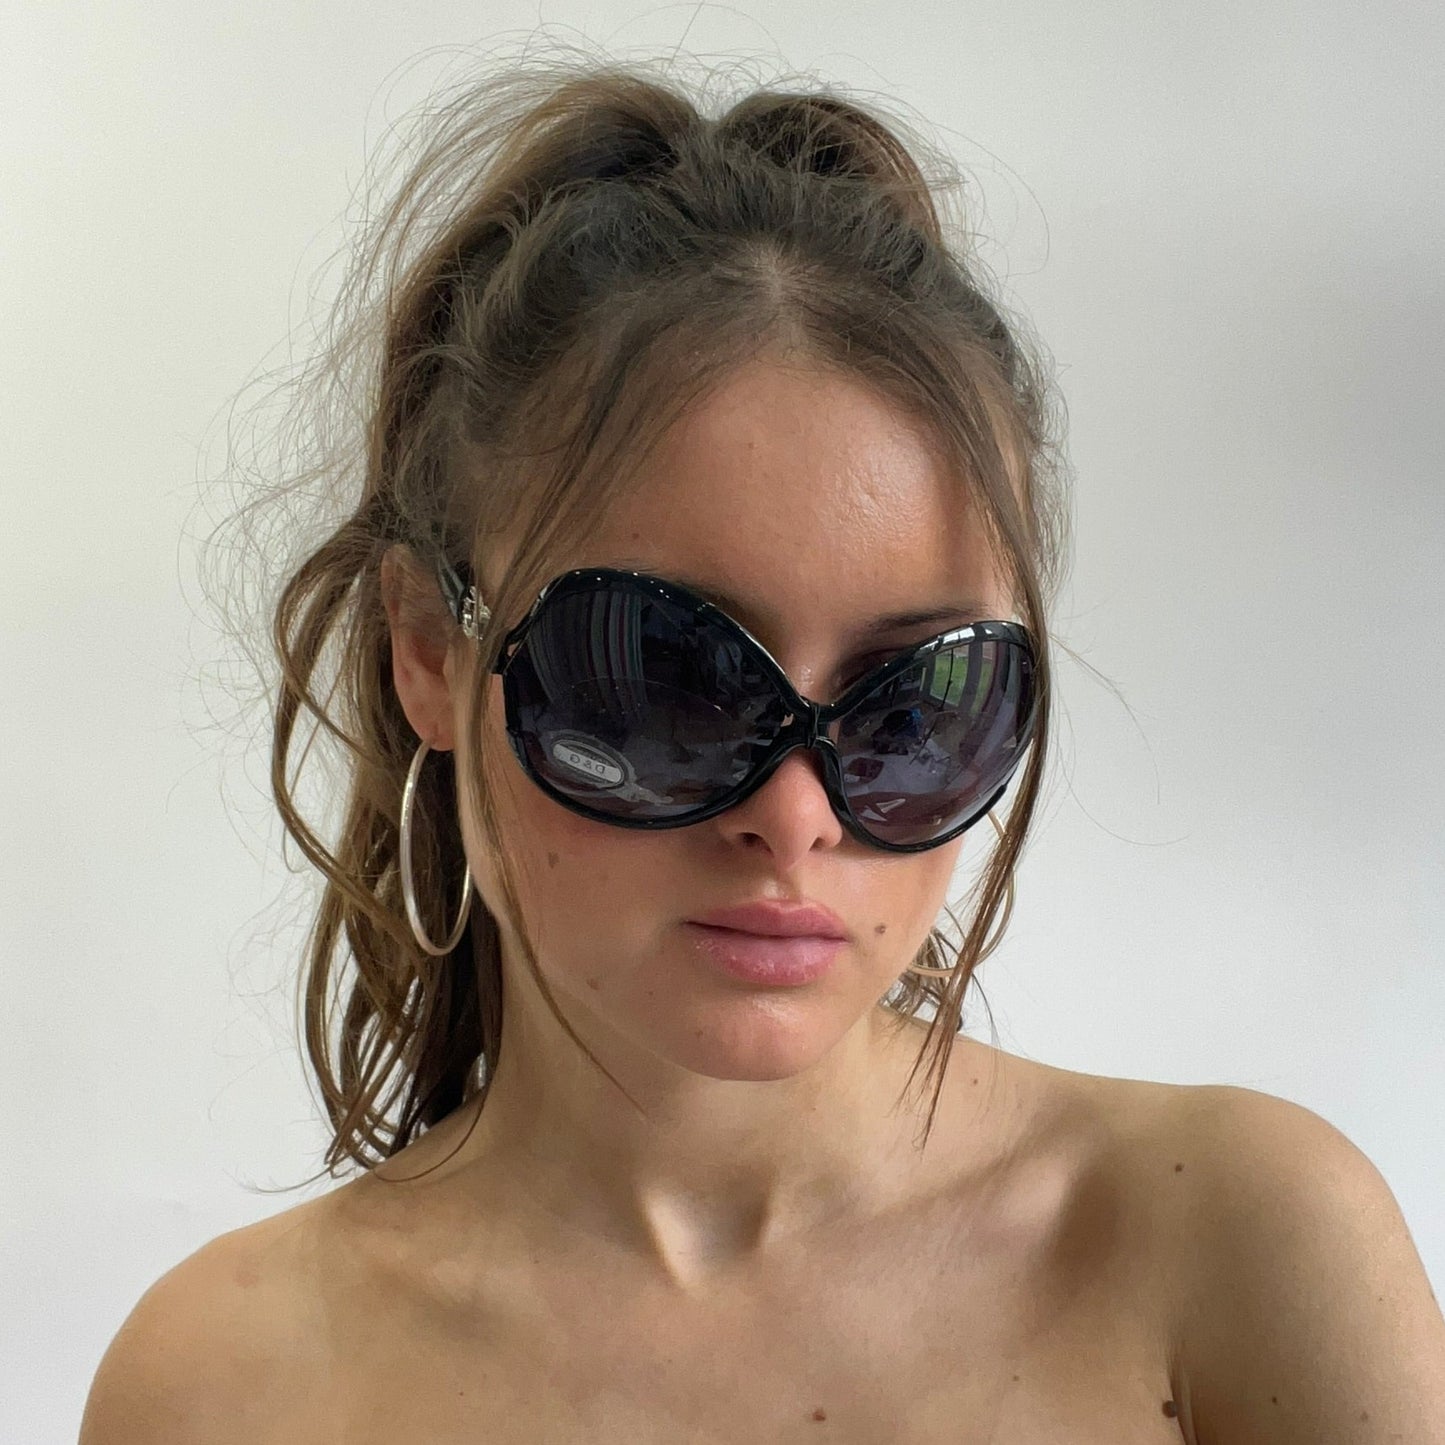 🎁 #6 oversized dolce & gabanna style black sunglasses